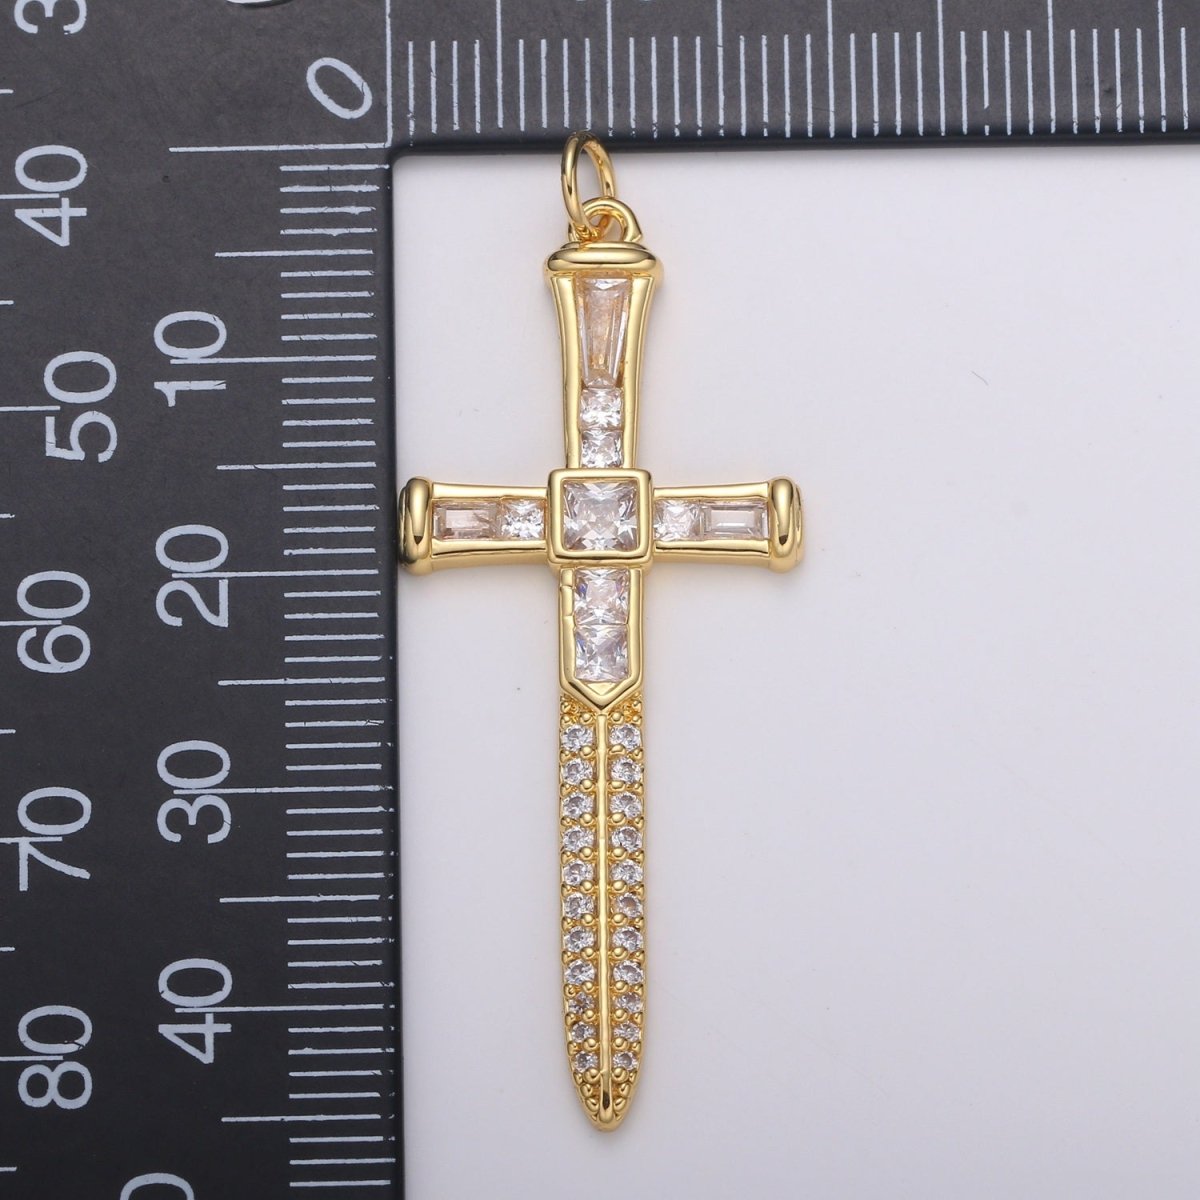 Baguette Cubic Cross Pendant, CZ Sword Pendant, Earrings pendant, Bracelet Charm, Necklace Pendant, 24k Gold Jewelry E-212 - DLUXCA